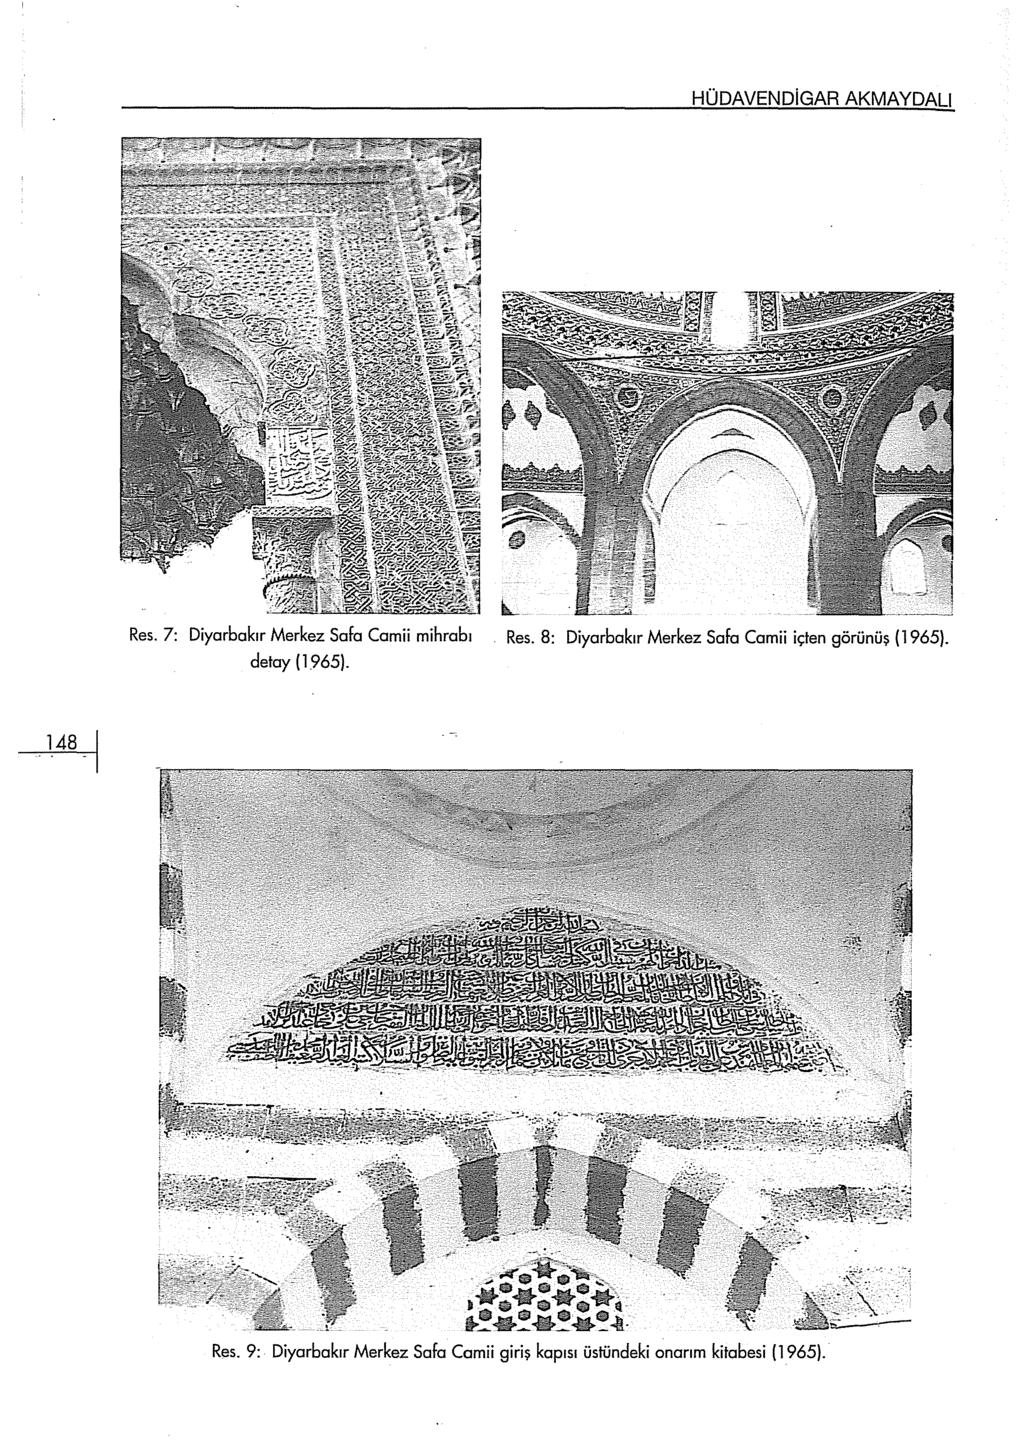 HÜDAVENDİGAR AKMAYDALI Res. 7: Diyarbakır Merkez Safa Camii mihrabı detay ( 1965). Res. 8: Diyarbakır Merkez Safa Camii içten görünüş (1965).